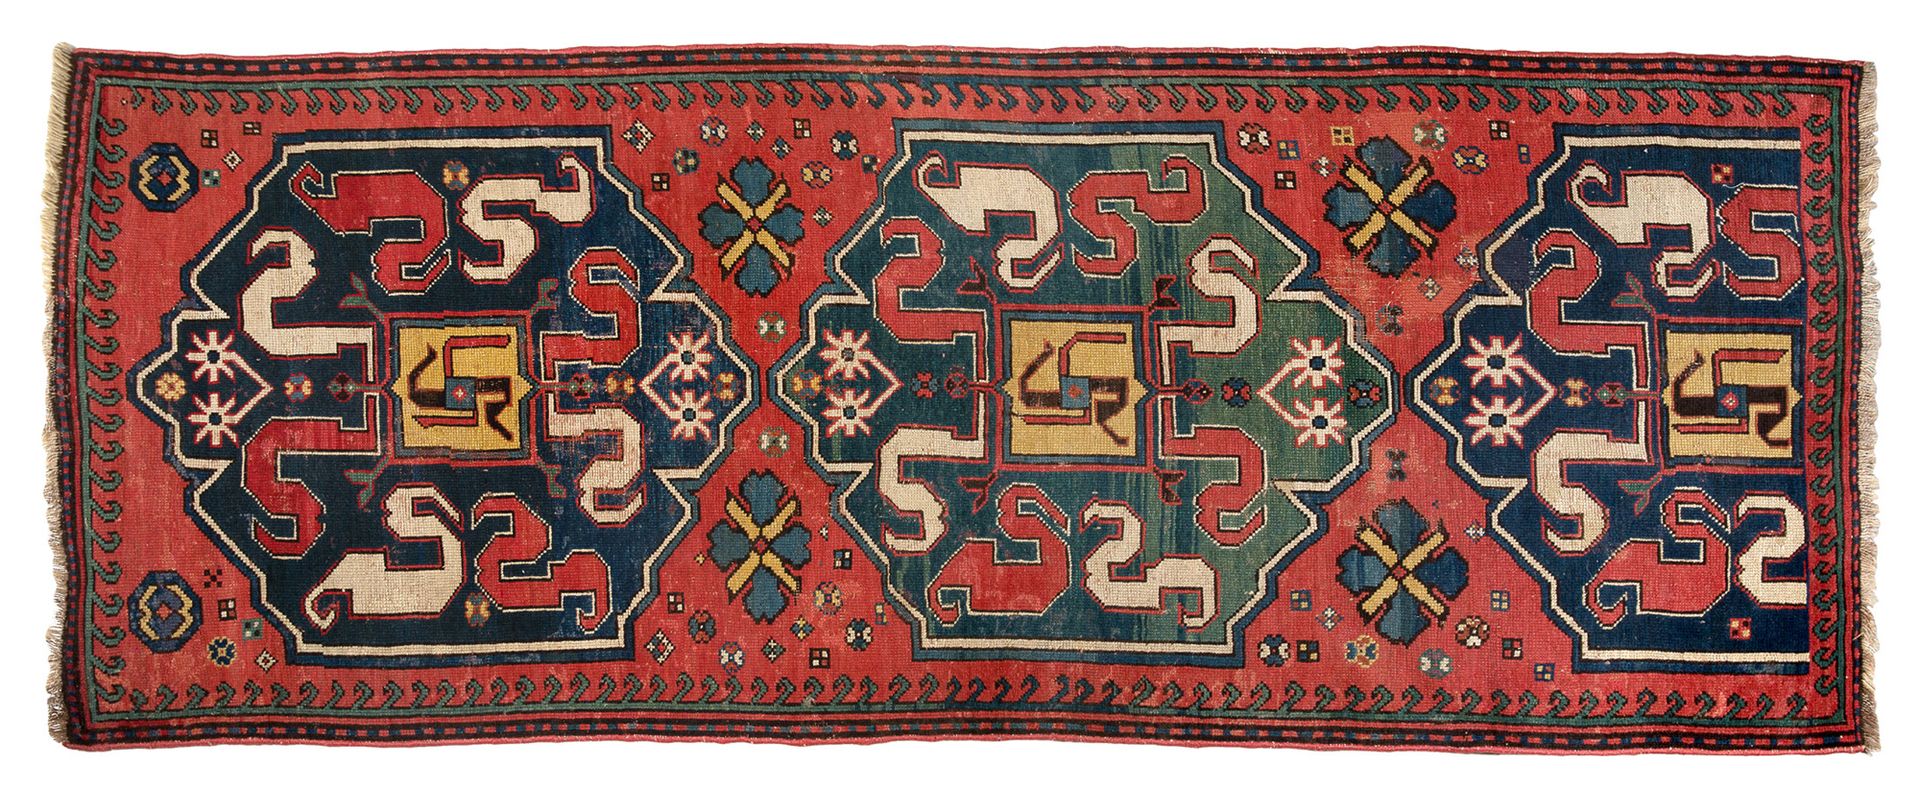 Null [RUGS]
非常古老的Chonzoresk（亚美尼亚）19世纪中期。羊毛基础上的羊毛丝绒。轻微的磨损和自然氧化。小型维修修复。砖场上有三个午夜蓝和翠&hellip;